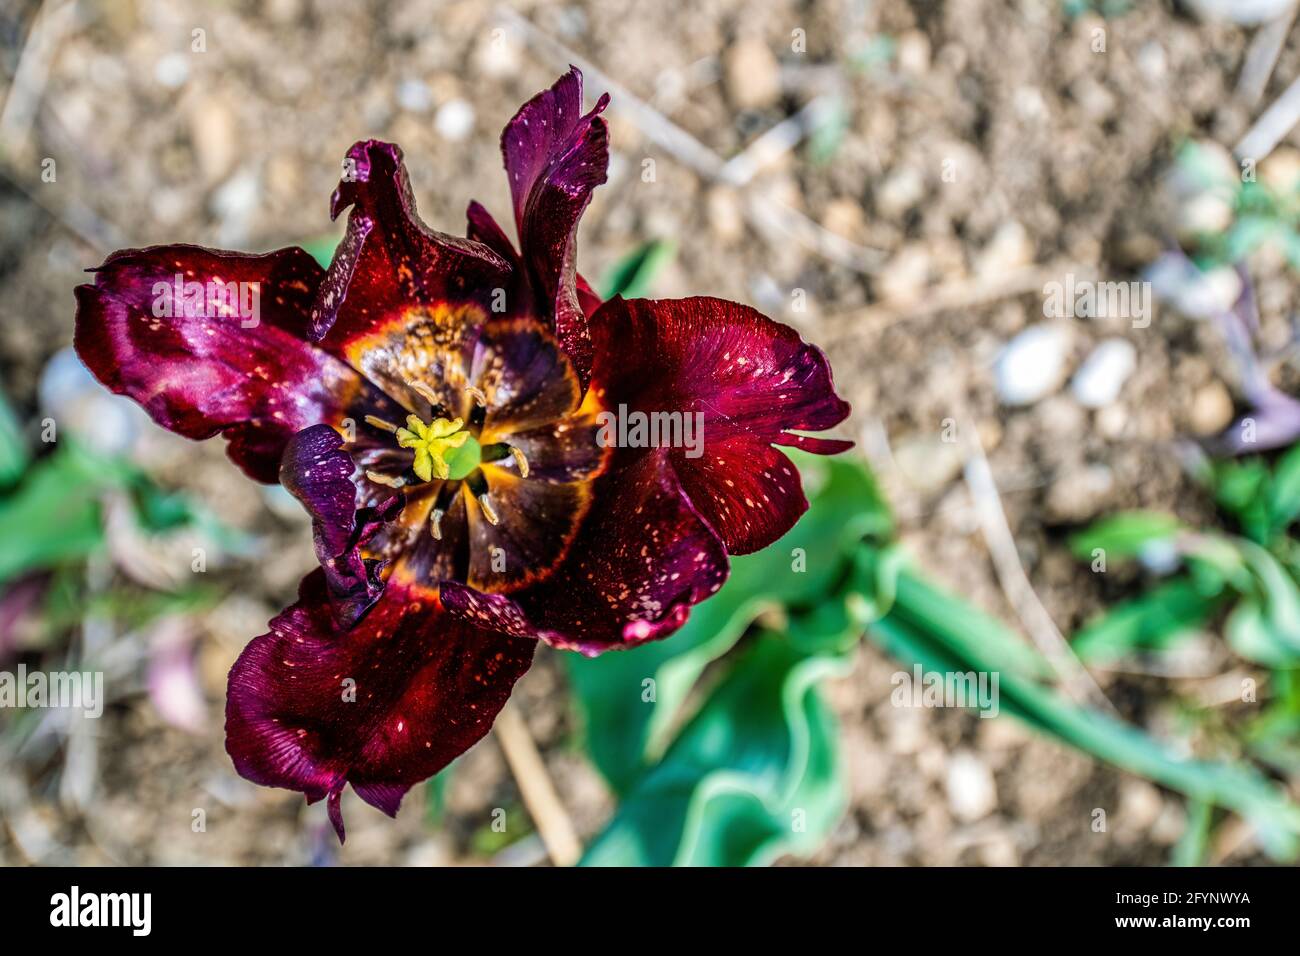 Ouvrez la tête de tulipe en gros plan vu d'en haut, avec de belles couleurs et formes Banque D'Images